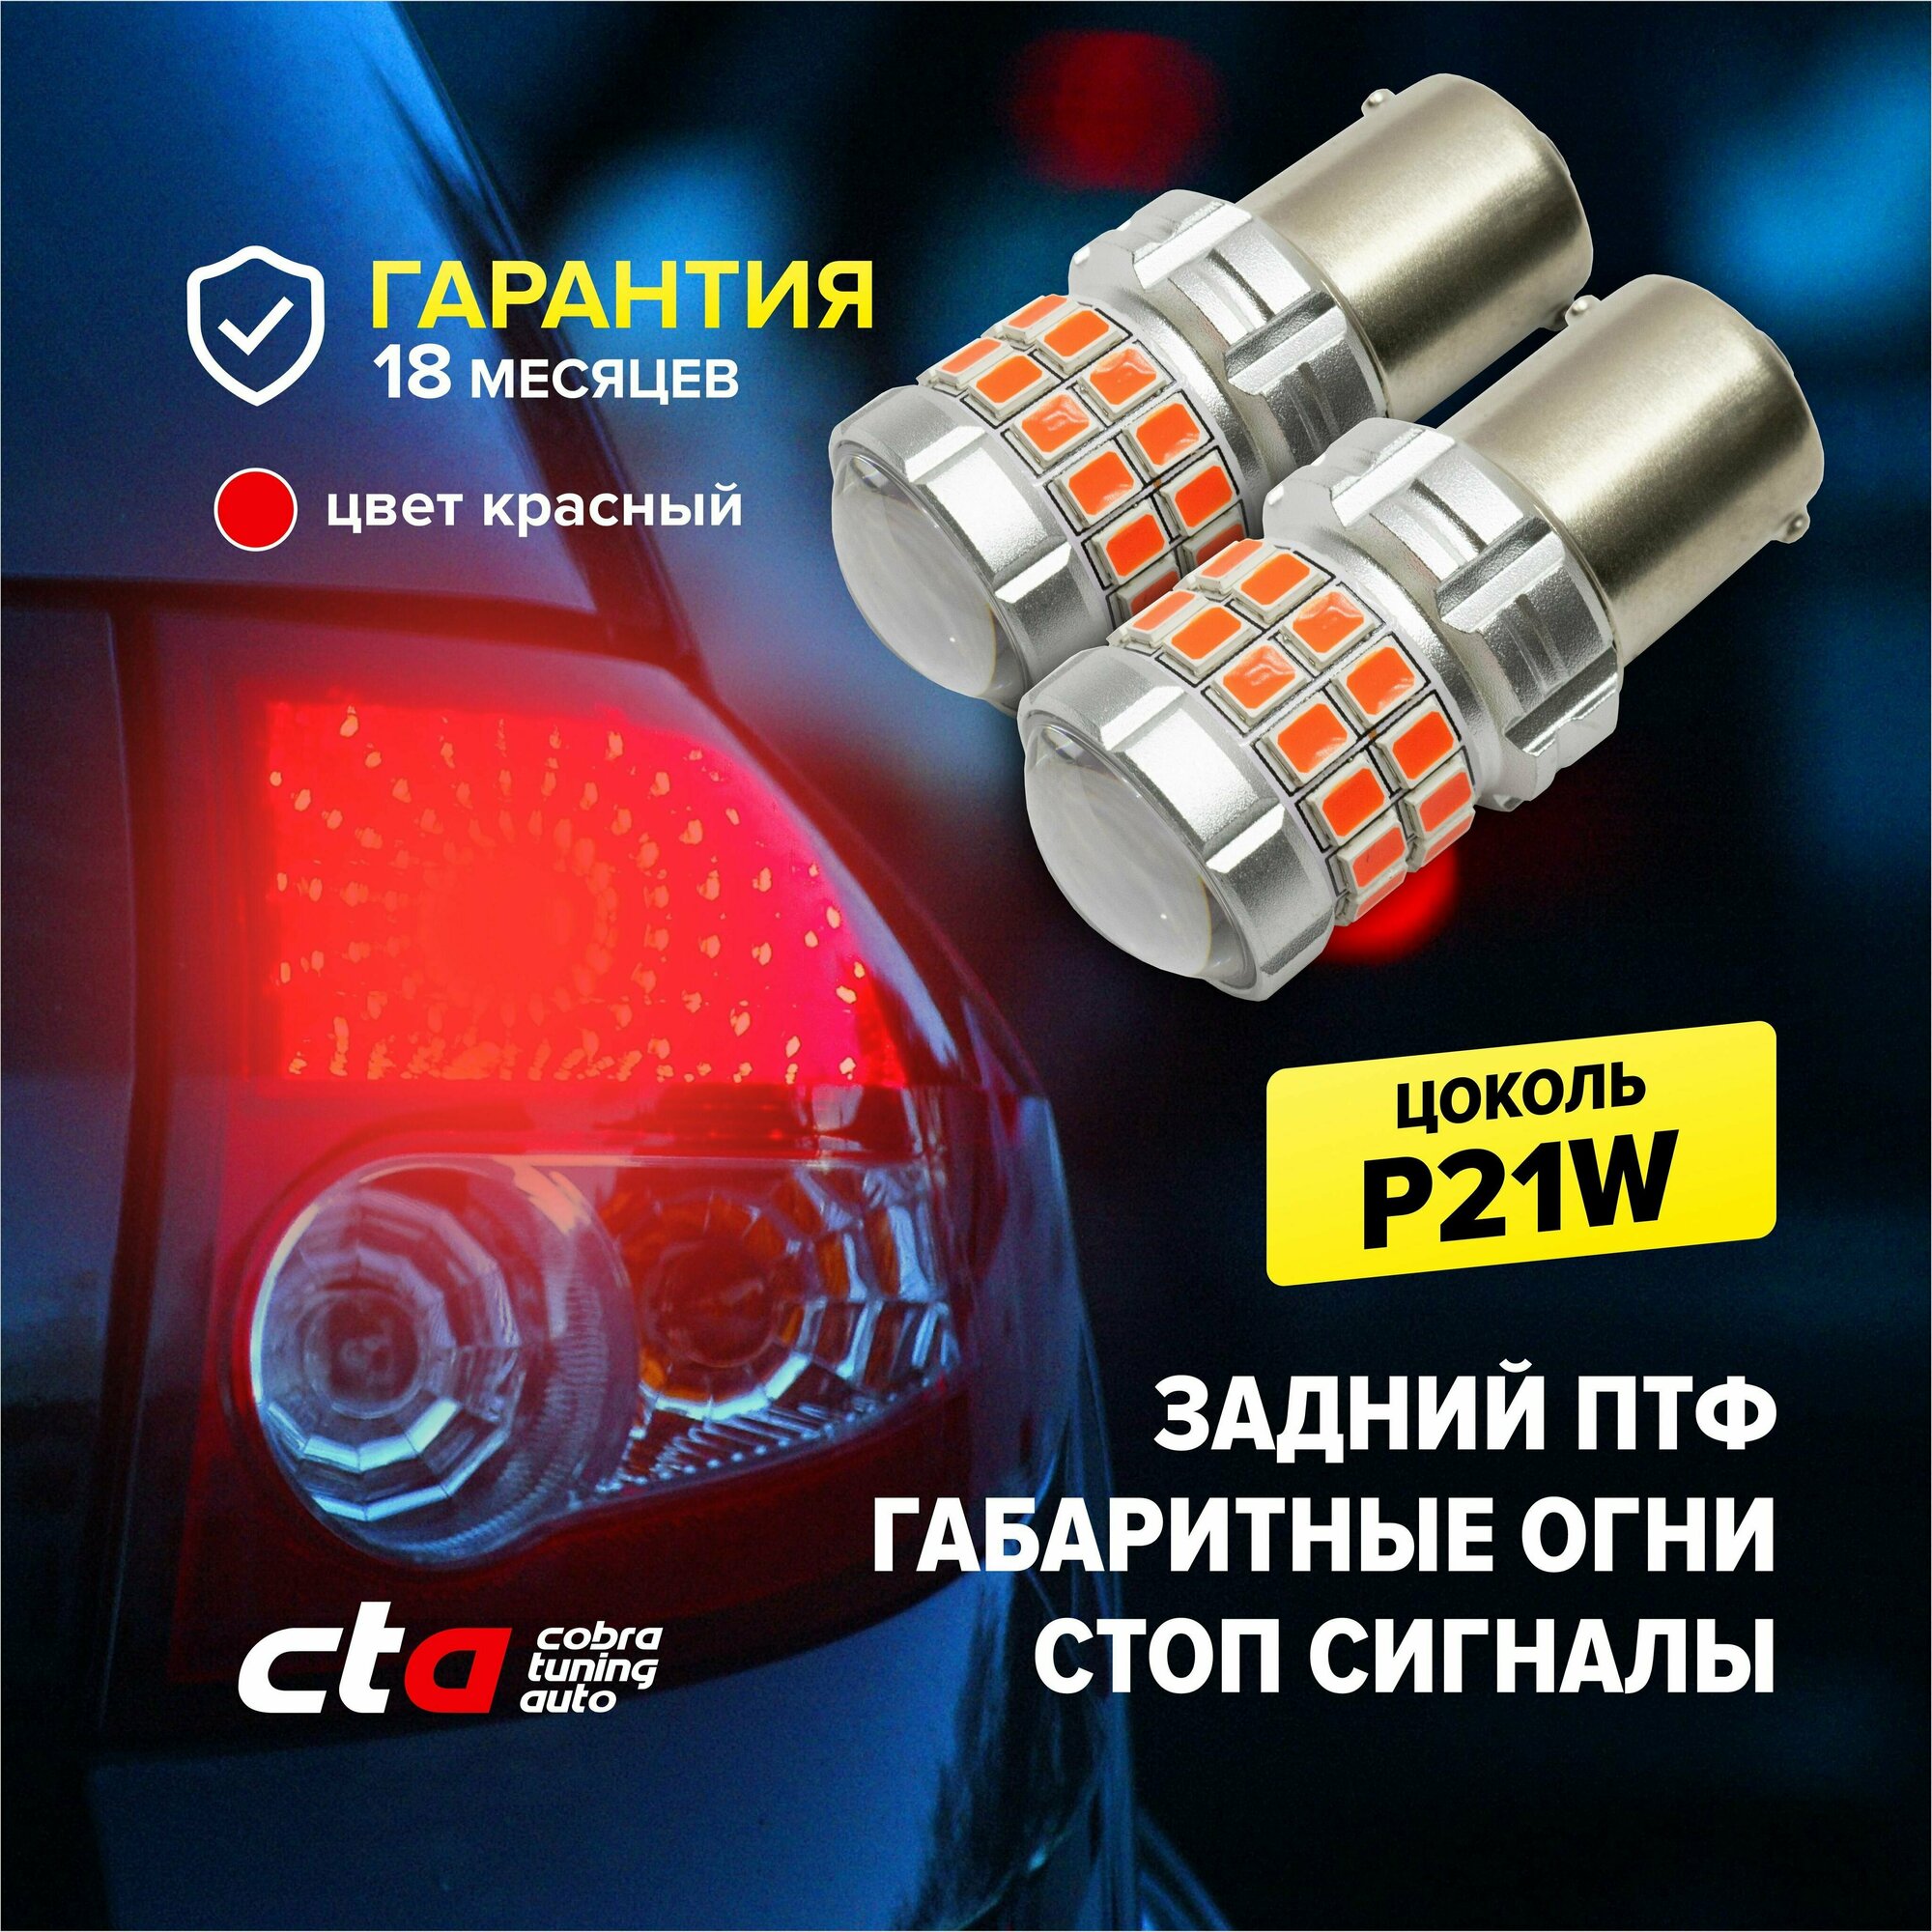 Светодиодная LED лампа для авто p21w (1156), красный цвет, габаритные огни, стоп сигналы, задний противотуманный фонарь, би полярная, 2 штуки